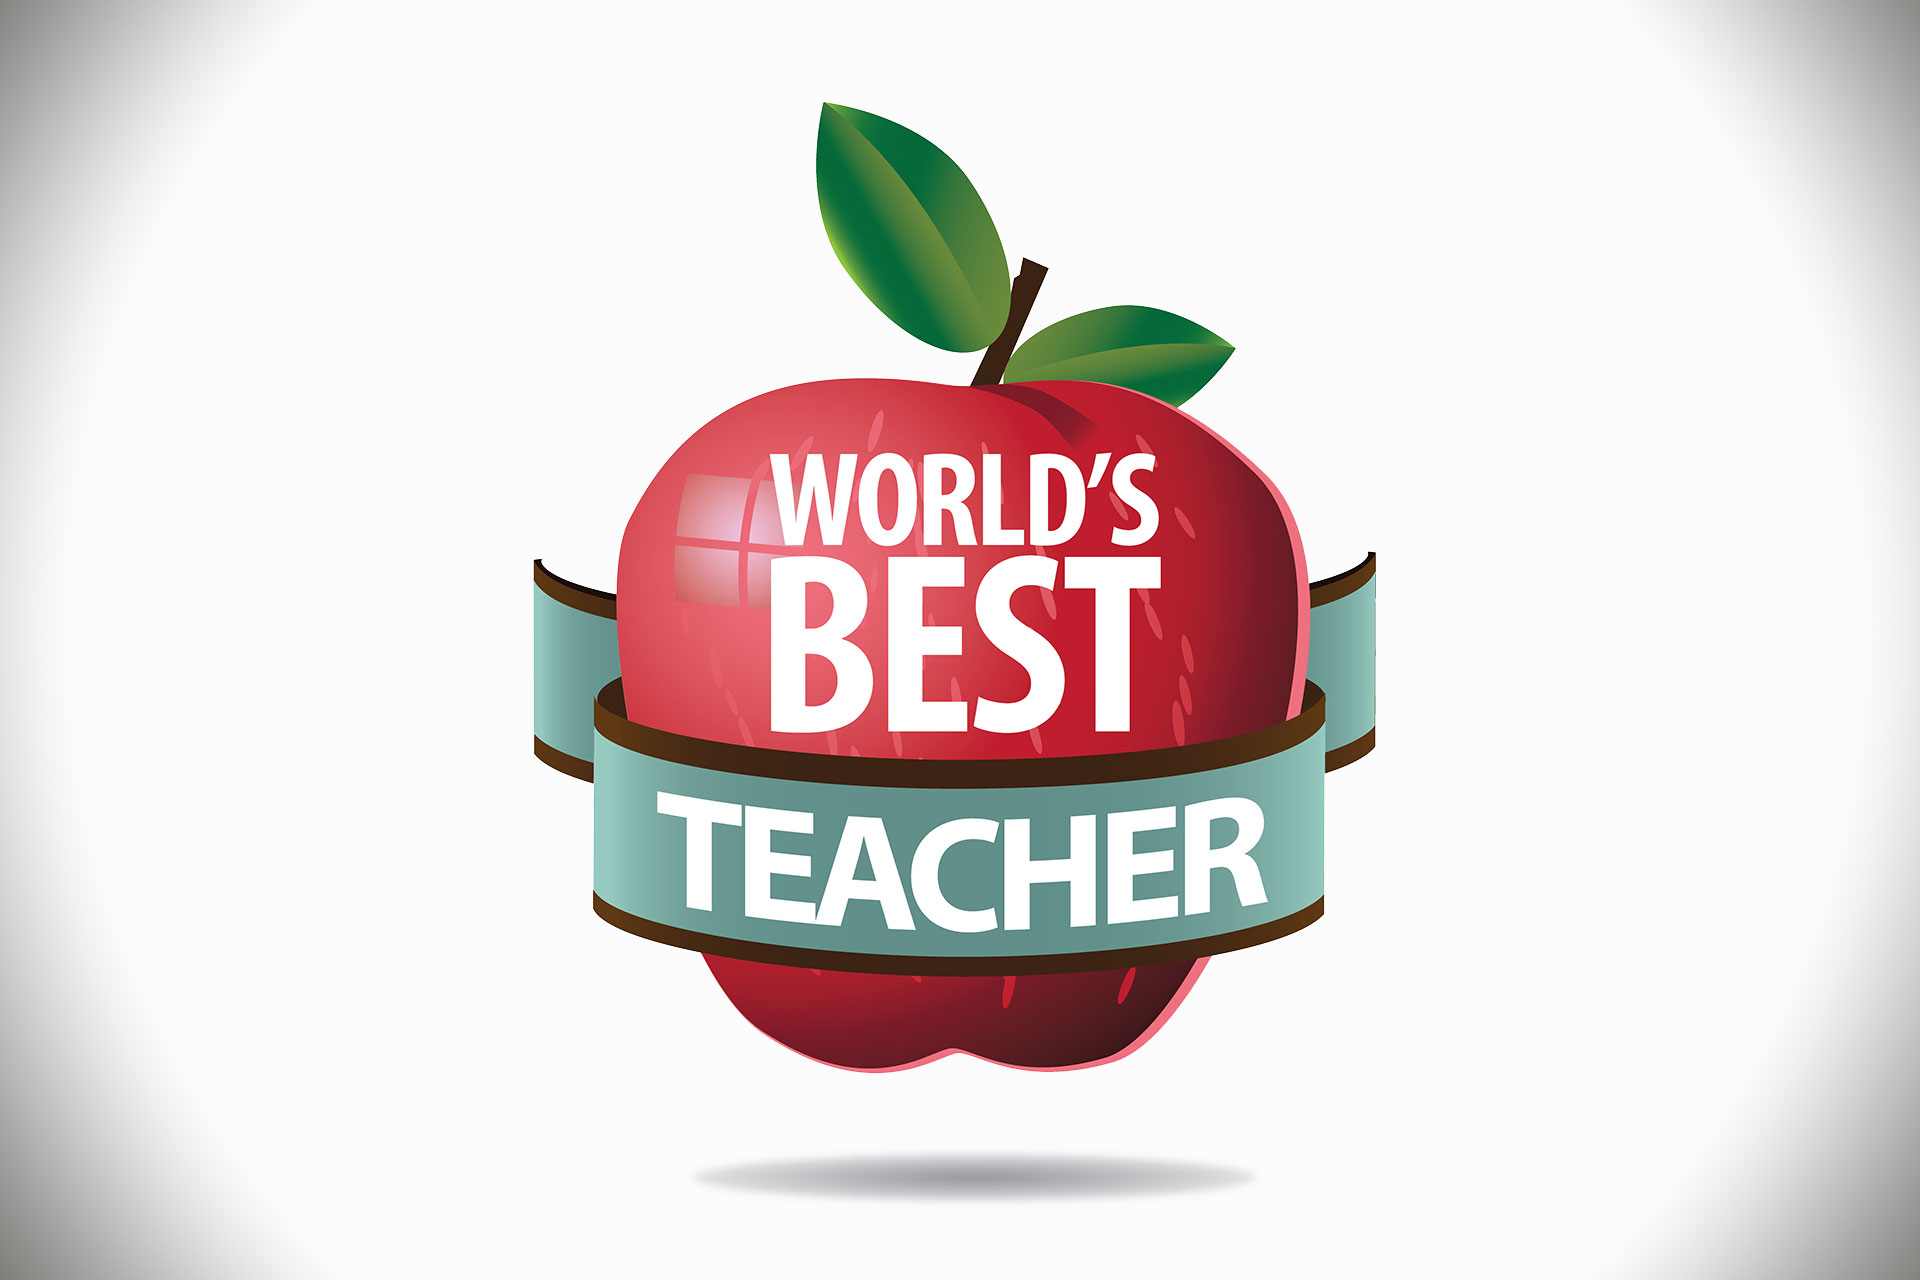 worldsbestteacher Center for Teacher Effectiveness